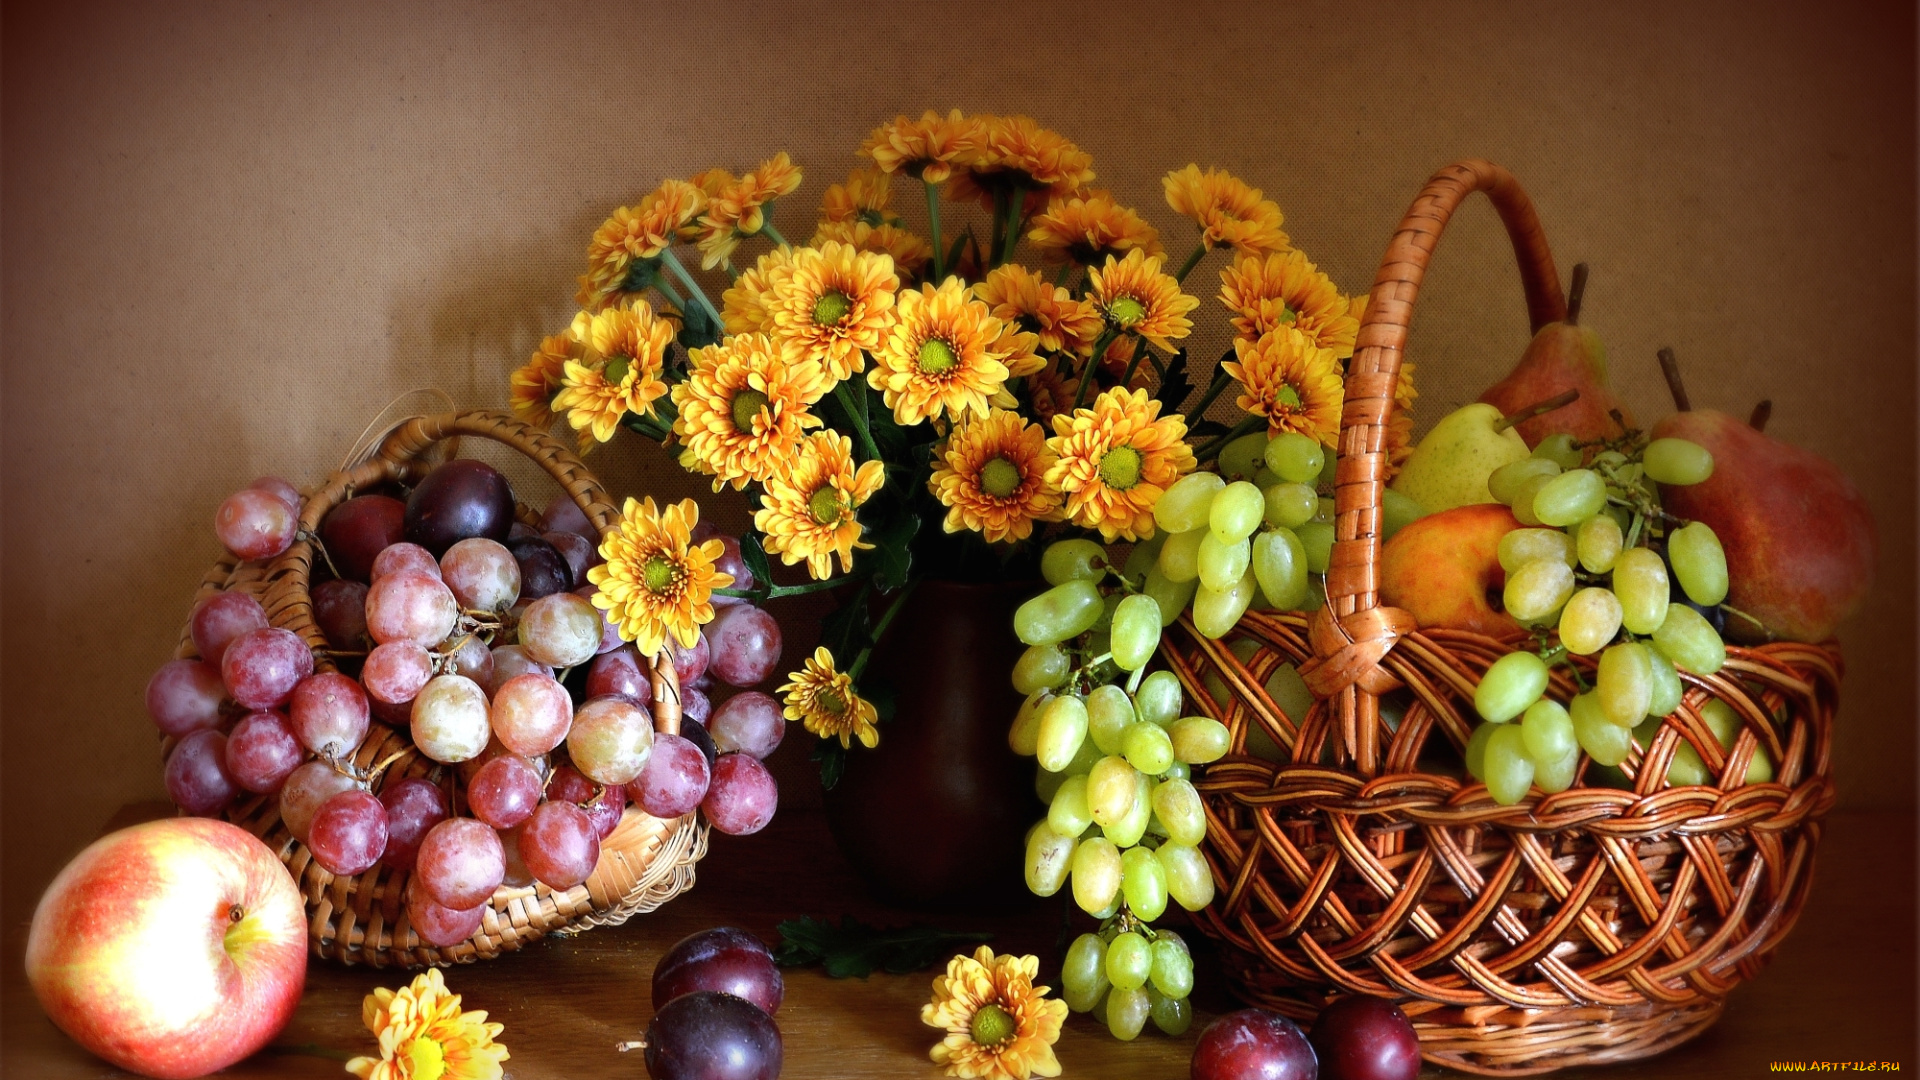 еда, фрукты, , ягоды, виноград, груша, яблоко, хризантемы, цветы, натюрморт, слива